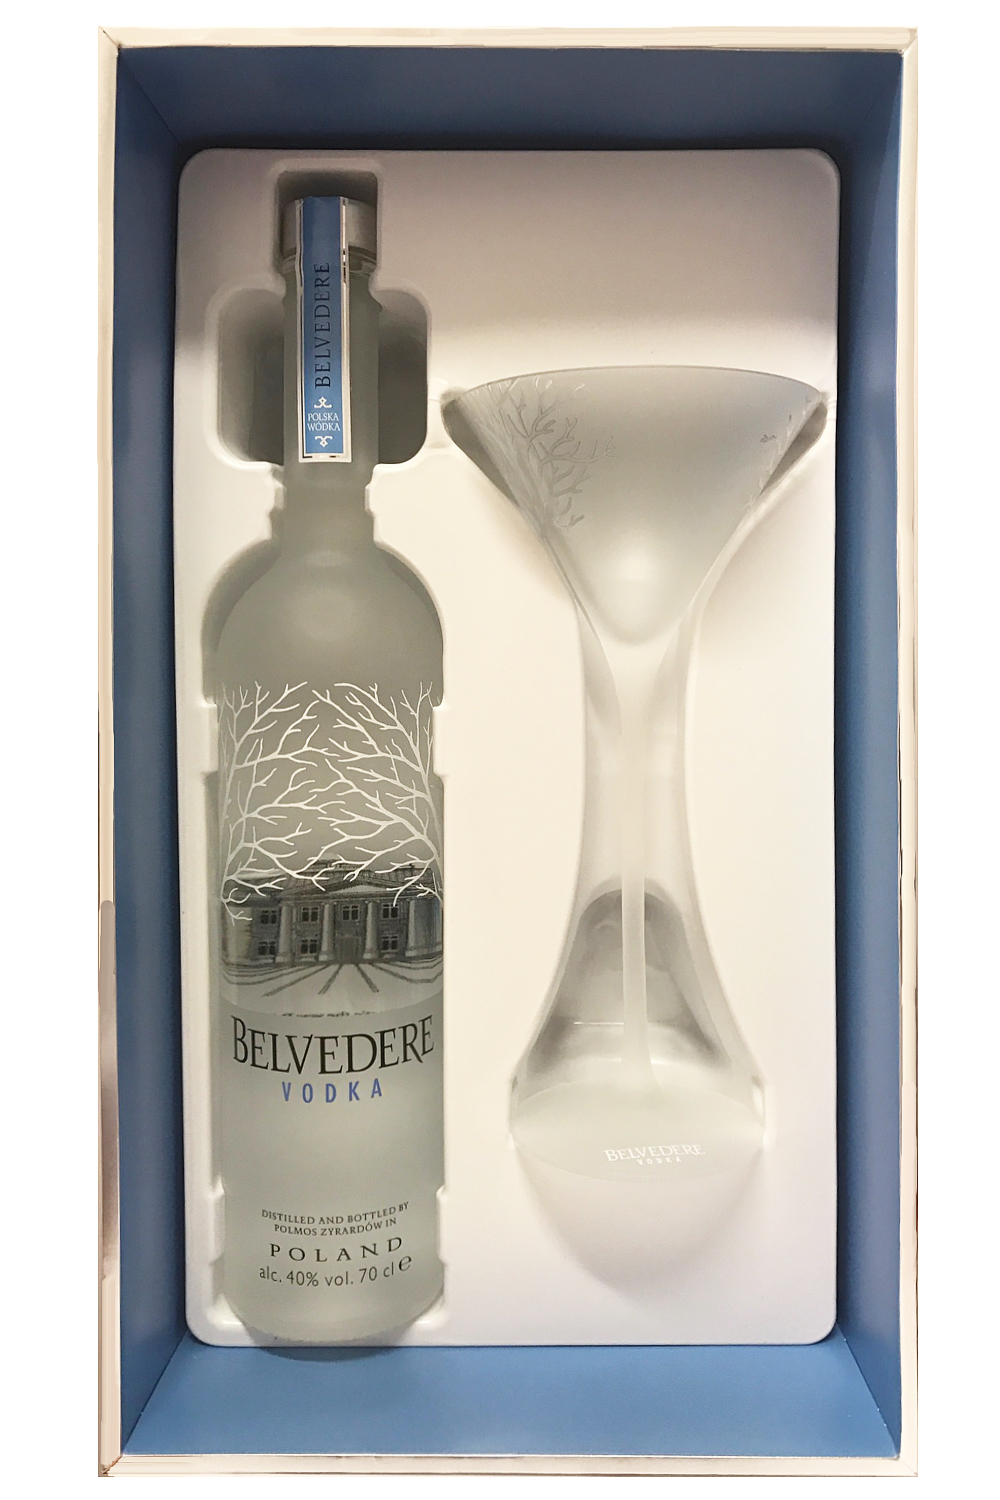 Belvedere Vodka Polen 0,7 Liter + Belvedere Glas -  ist  Ihr preiswerter Spirituosen Online Shop.